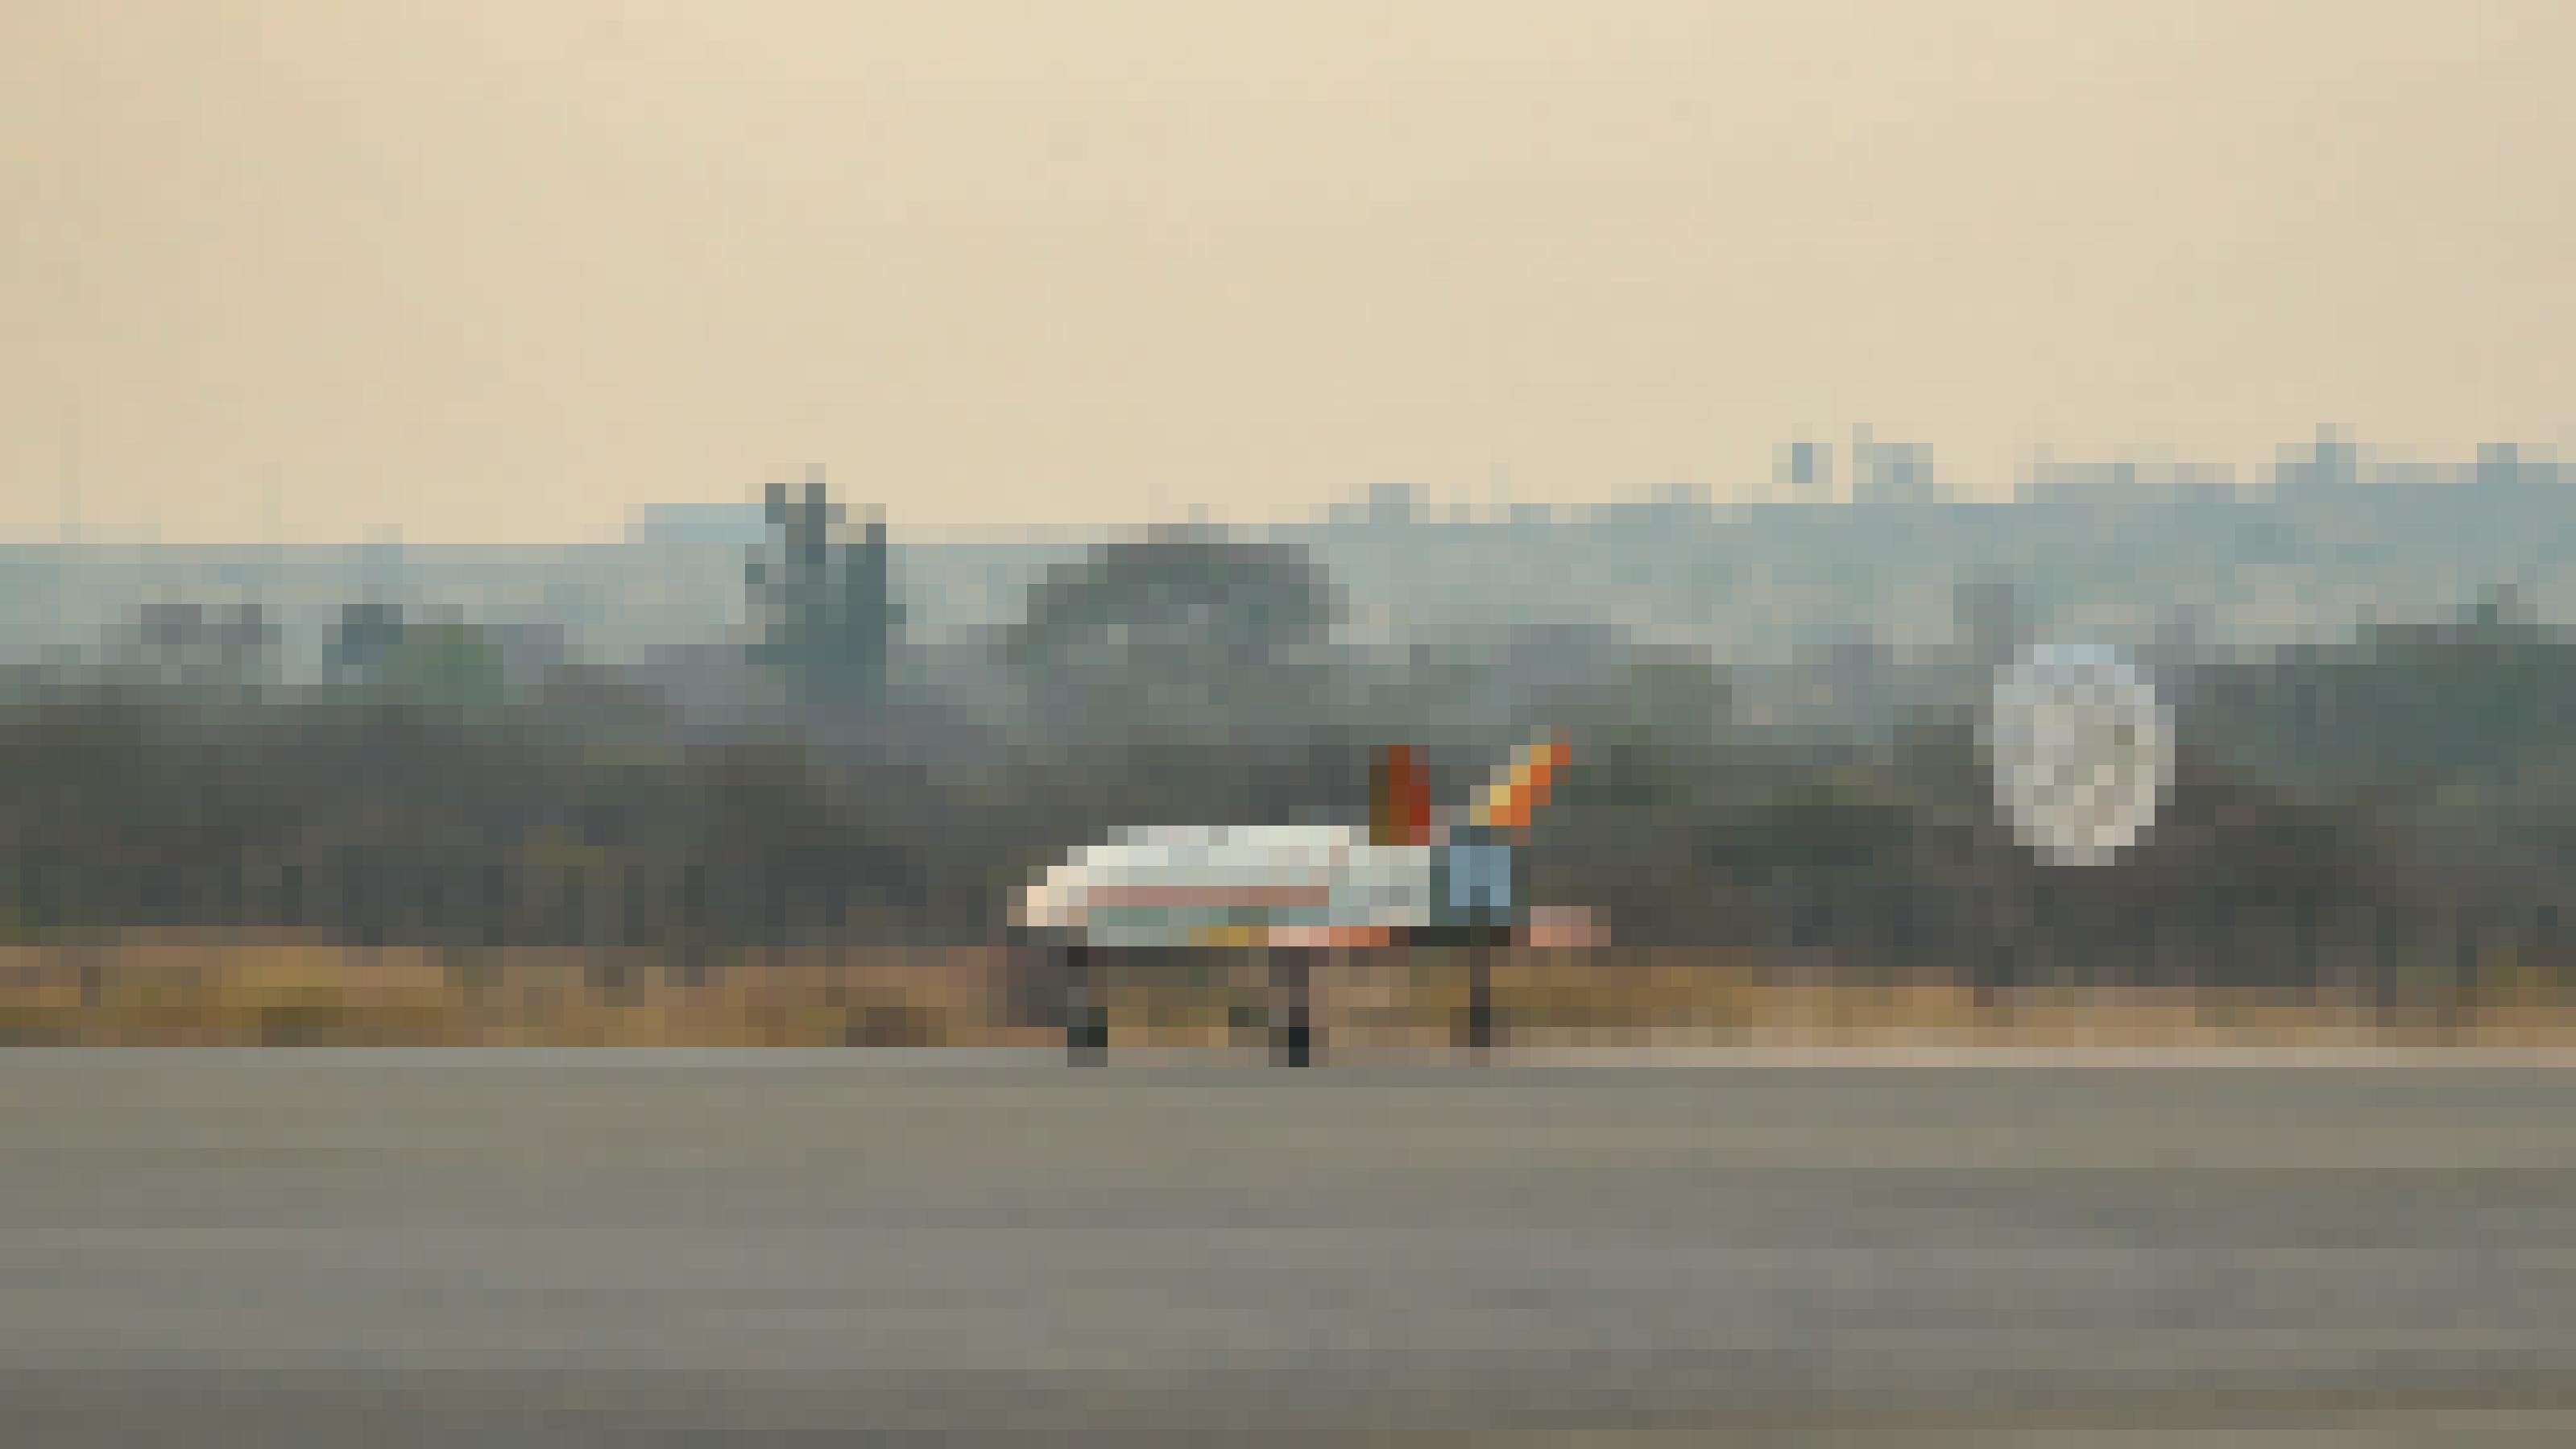 Das indische Spaceshuttle Pushpak beim Landeanflug auf einer Landebahn.